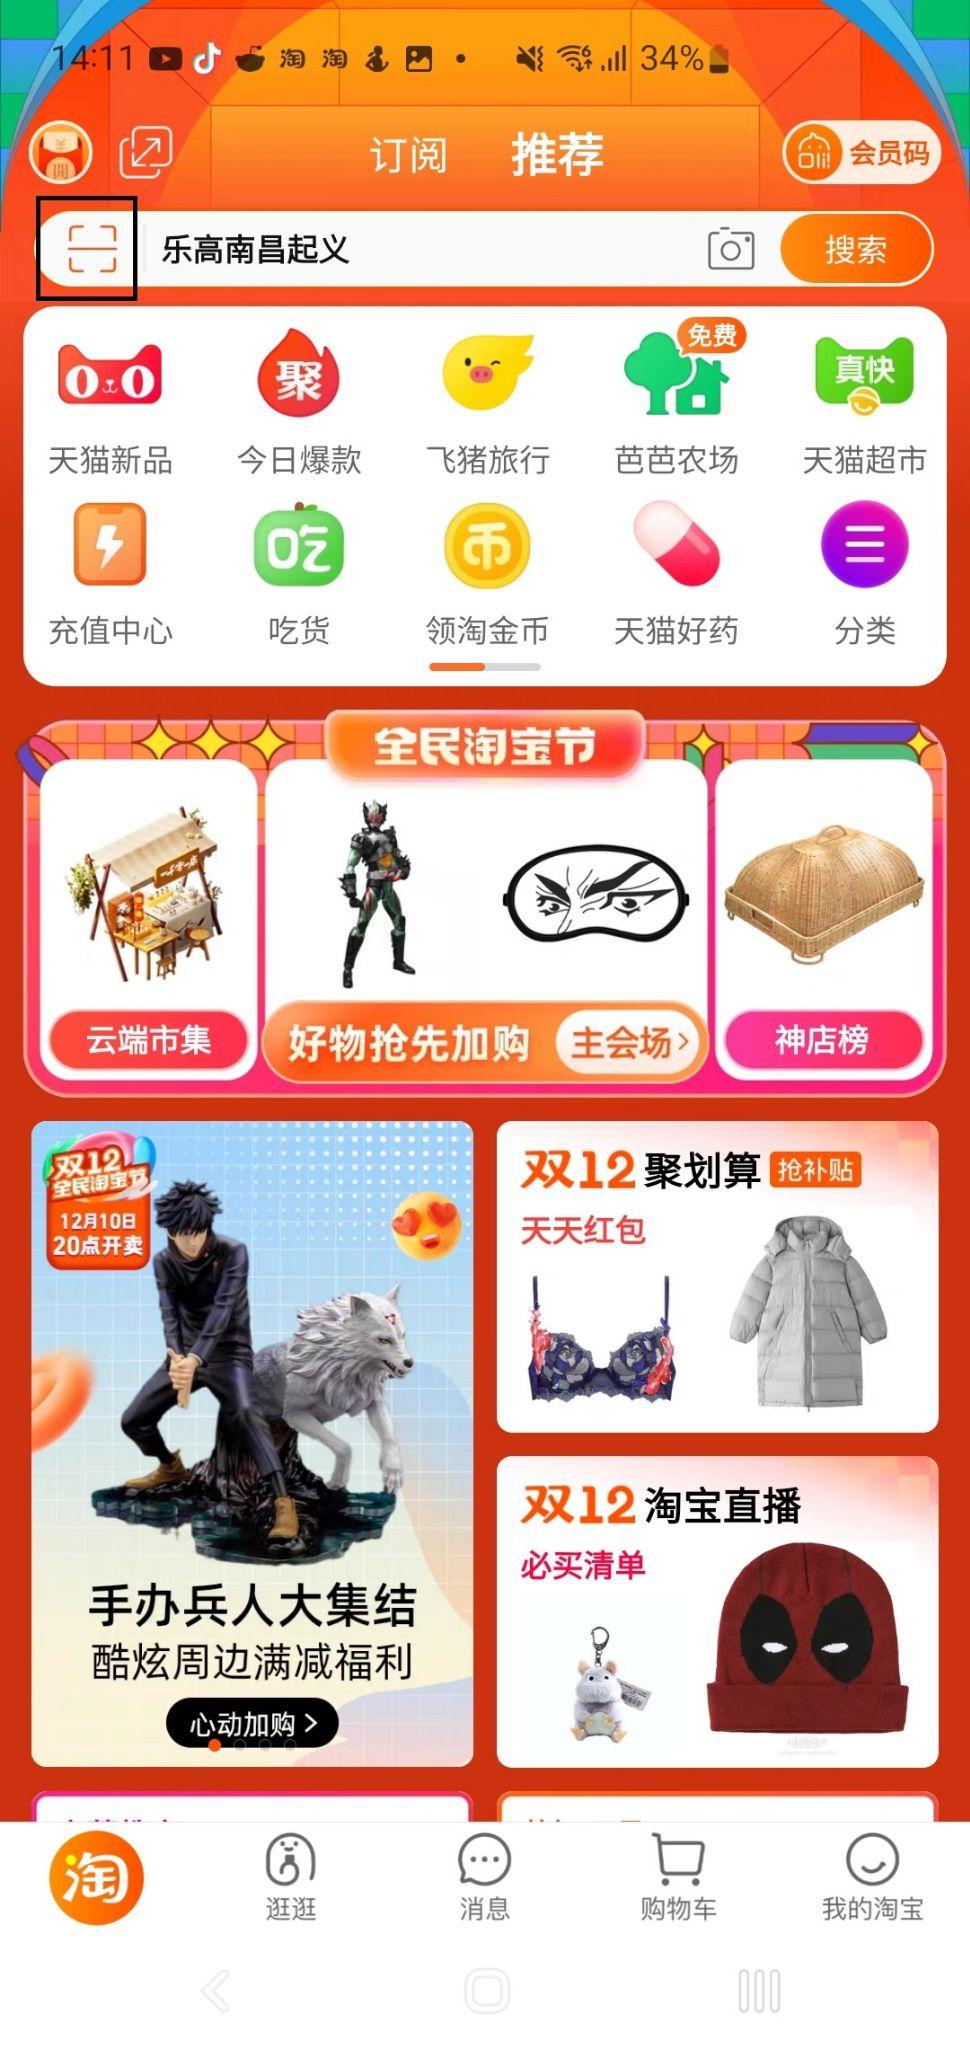 Use Taobao app to fix Taobao login problem